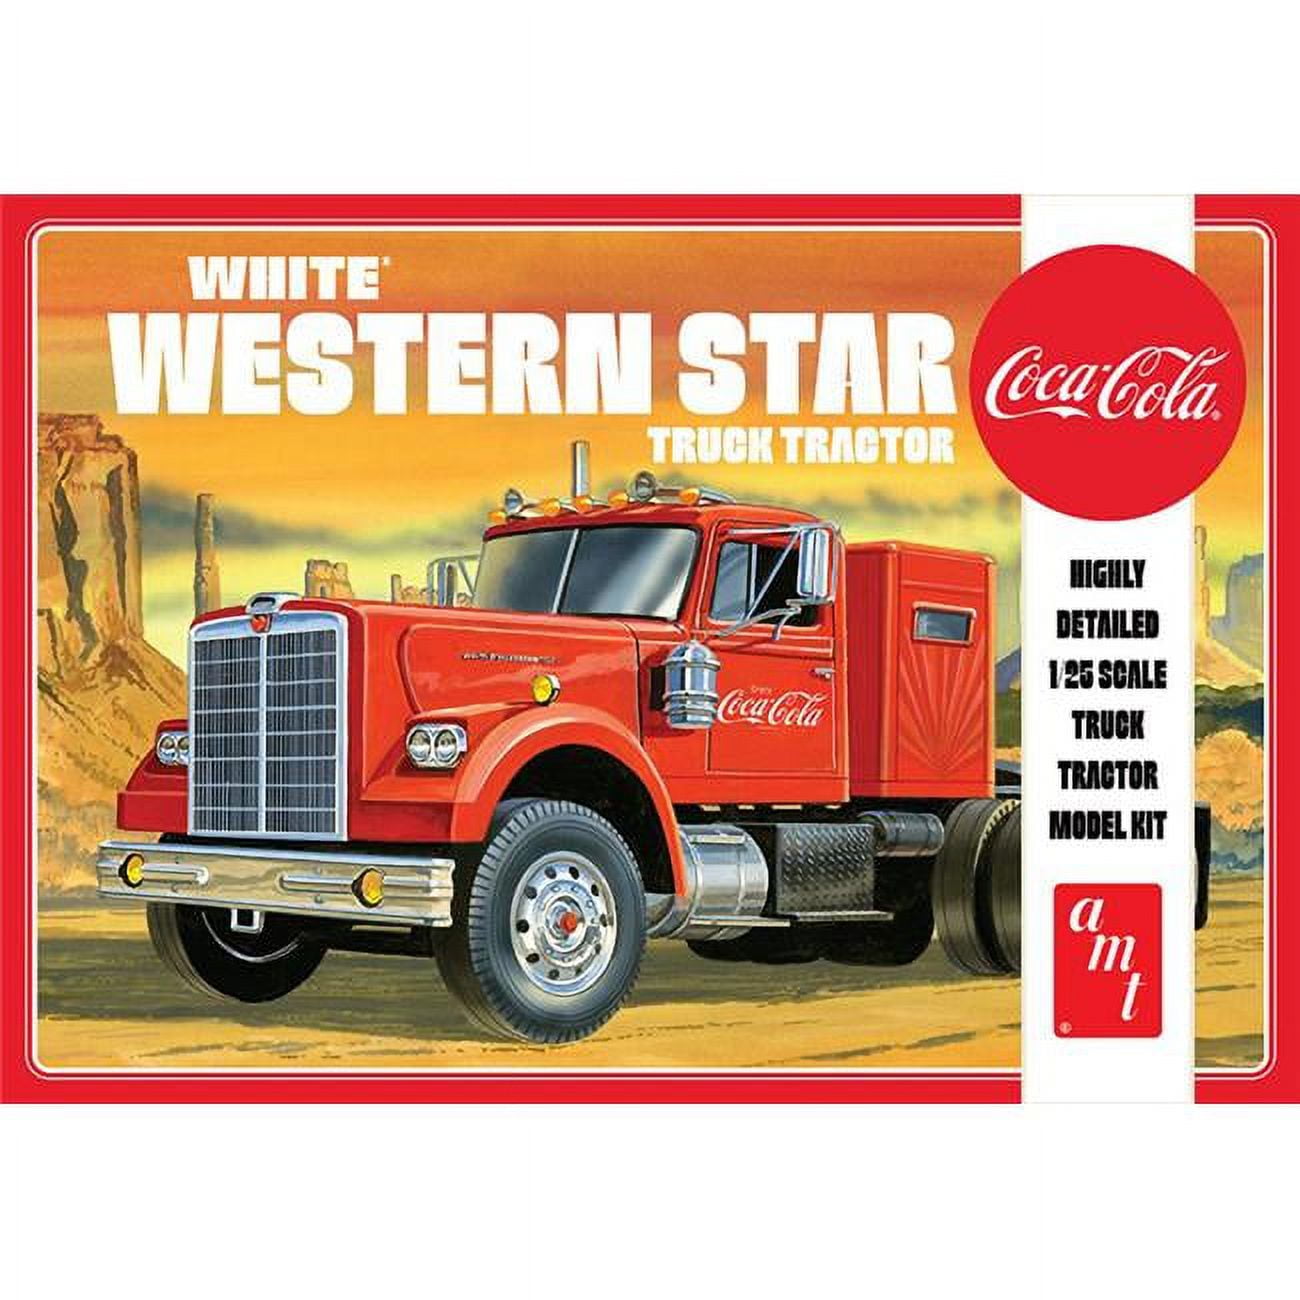 1160 Coca-cola - White Western Star Semi Tractor